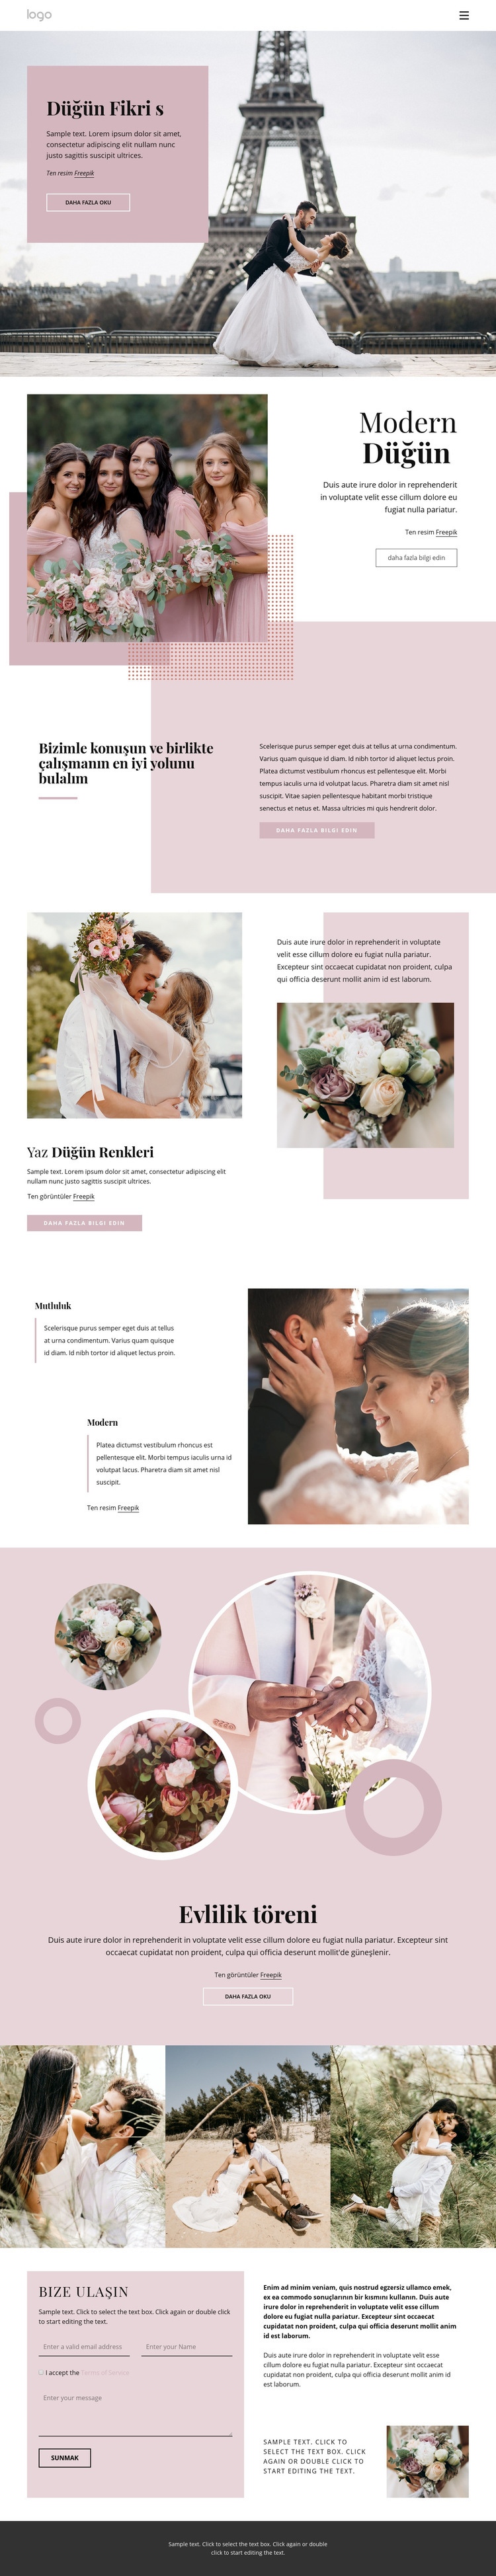 Eşsiz düğün töreni Web sitesi tasarımı